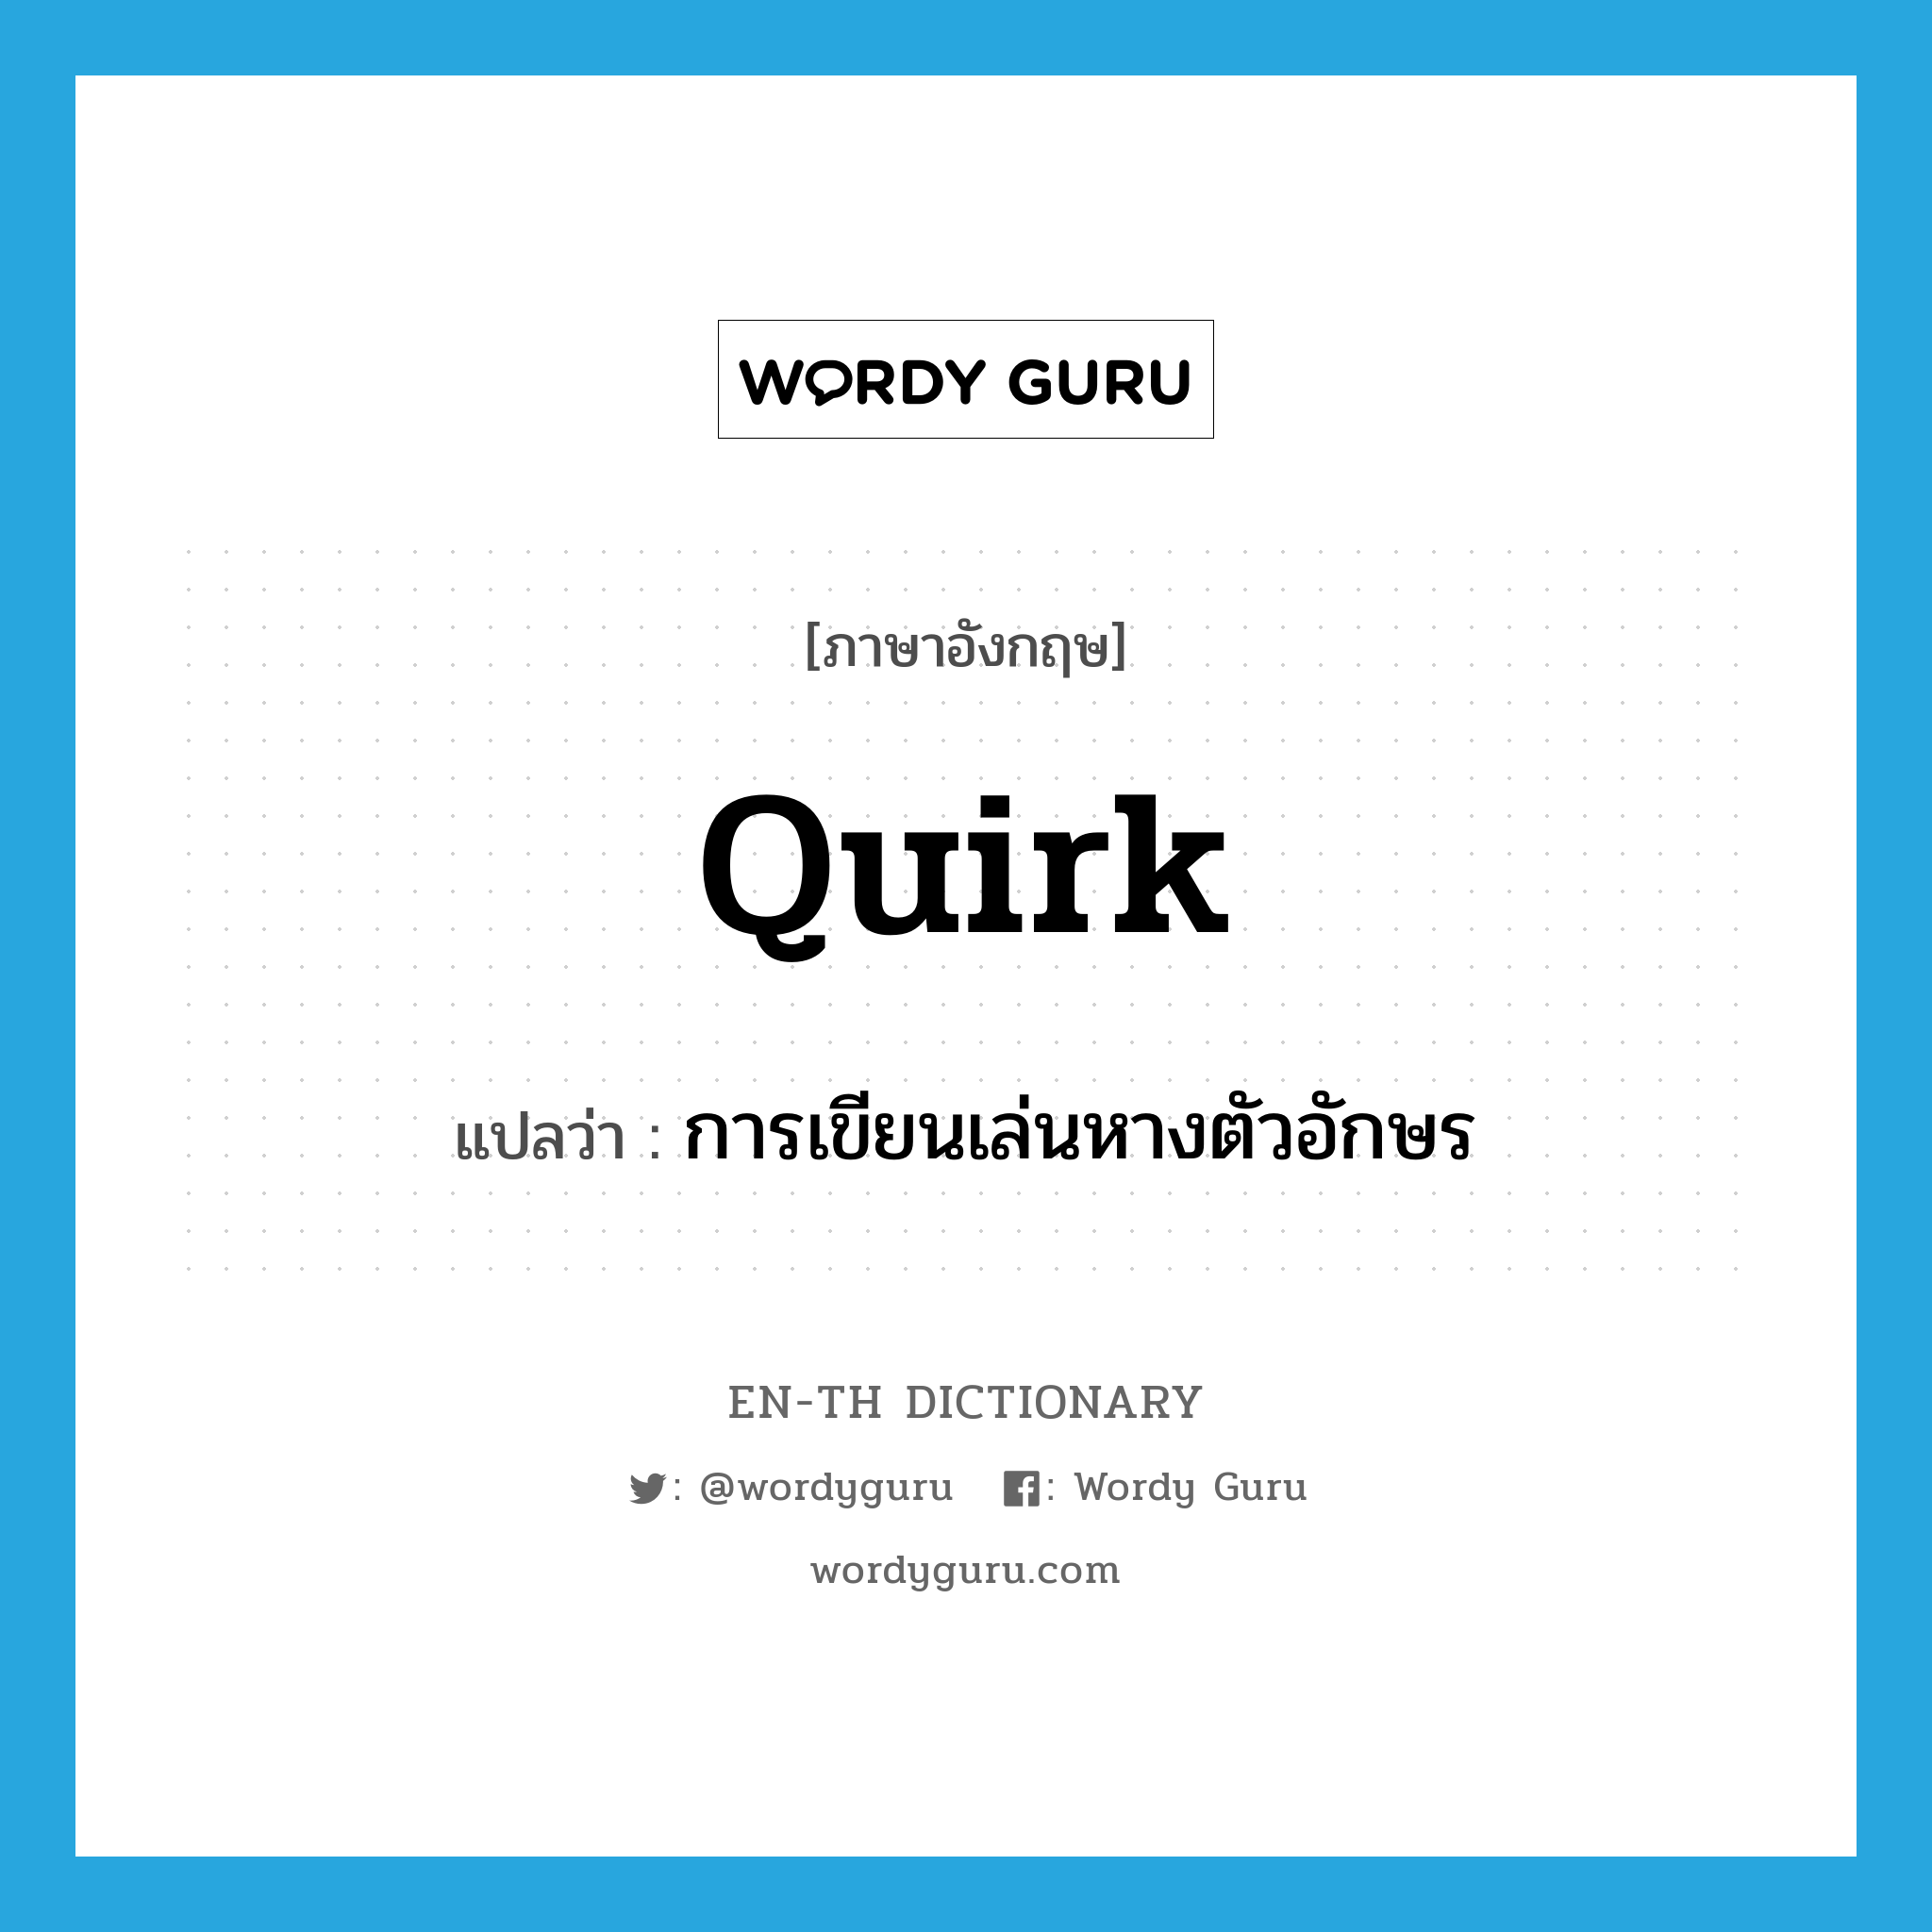 การเขียนเล่นหางตัวอักษร ภาษาอังกฤษ?, คำศัพท์ภาษาอังกฤษ การเขียนเล่นหางตัวอักษร แปลว่า quirk ประเภท N หมวด N